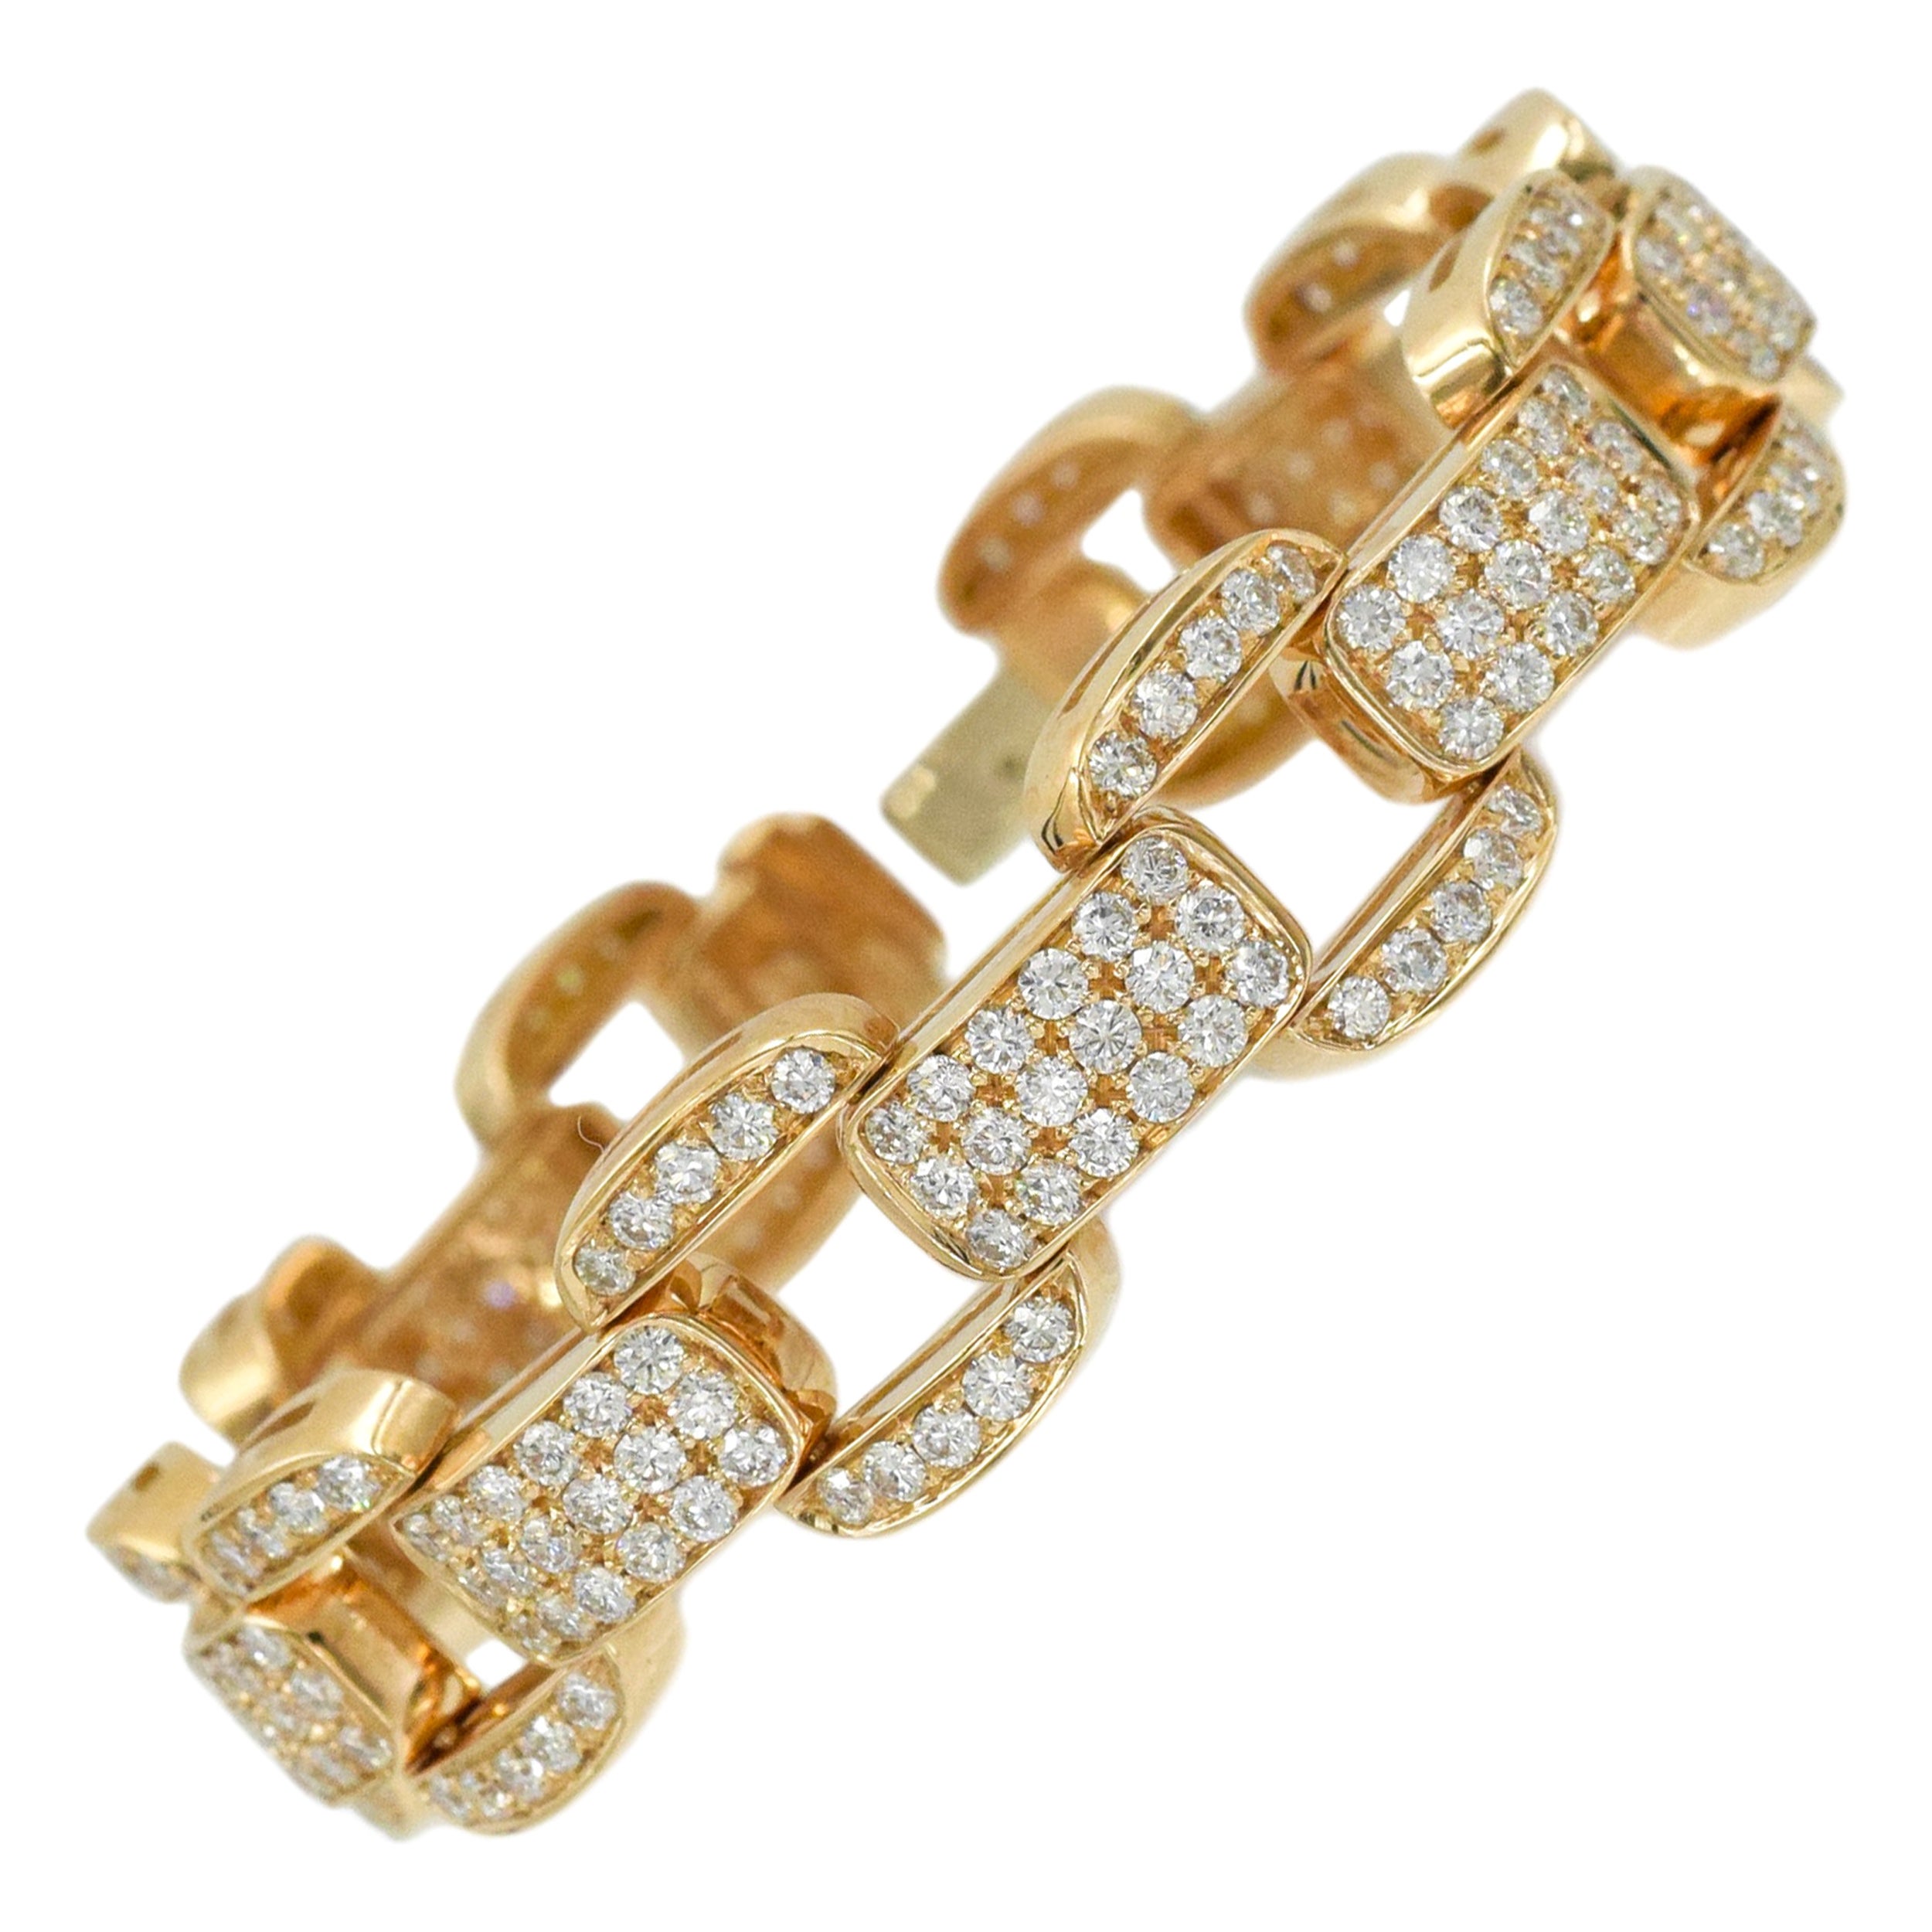 Oscar Heyman Diamond Bracelet in 18k Rose Gold